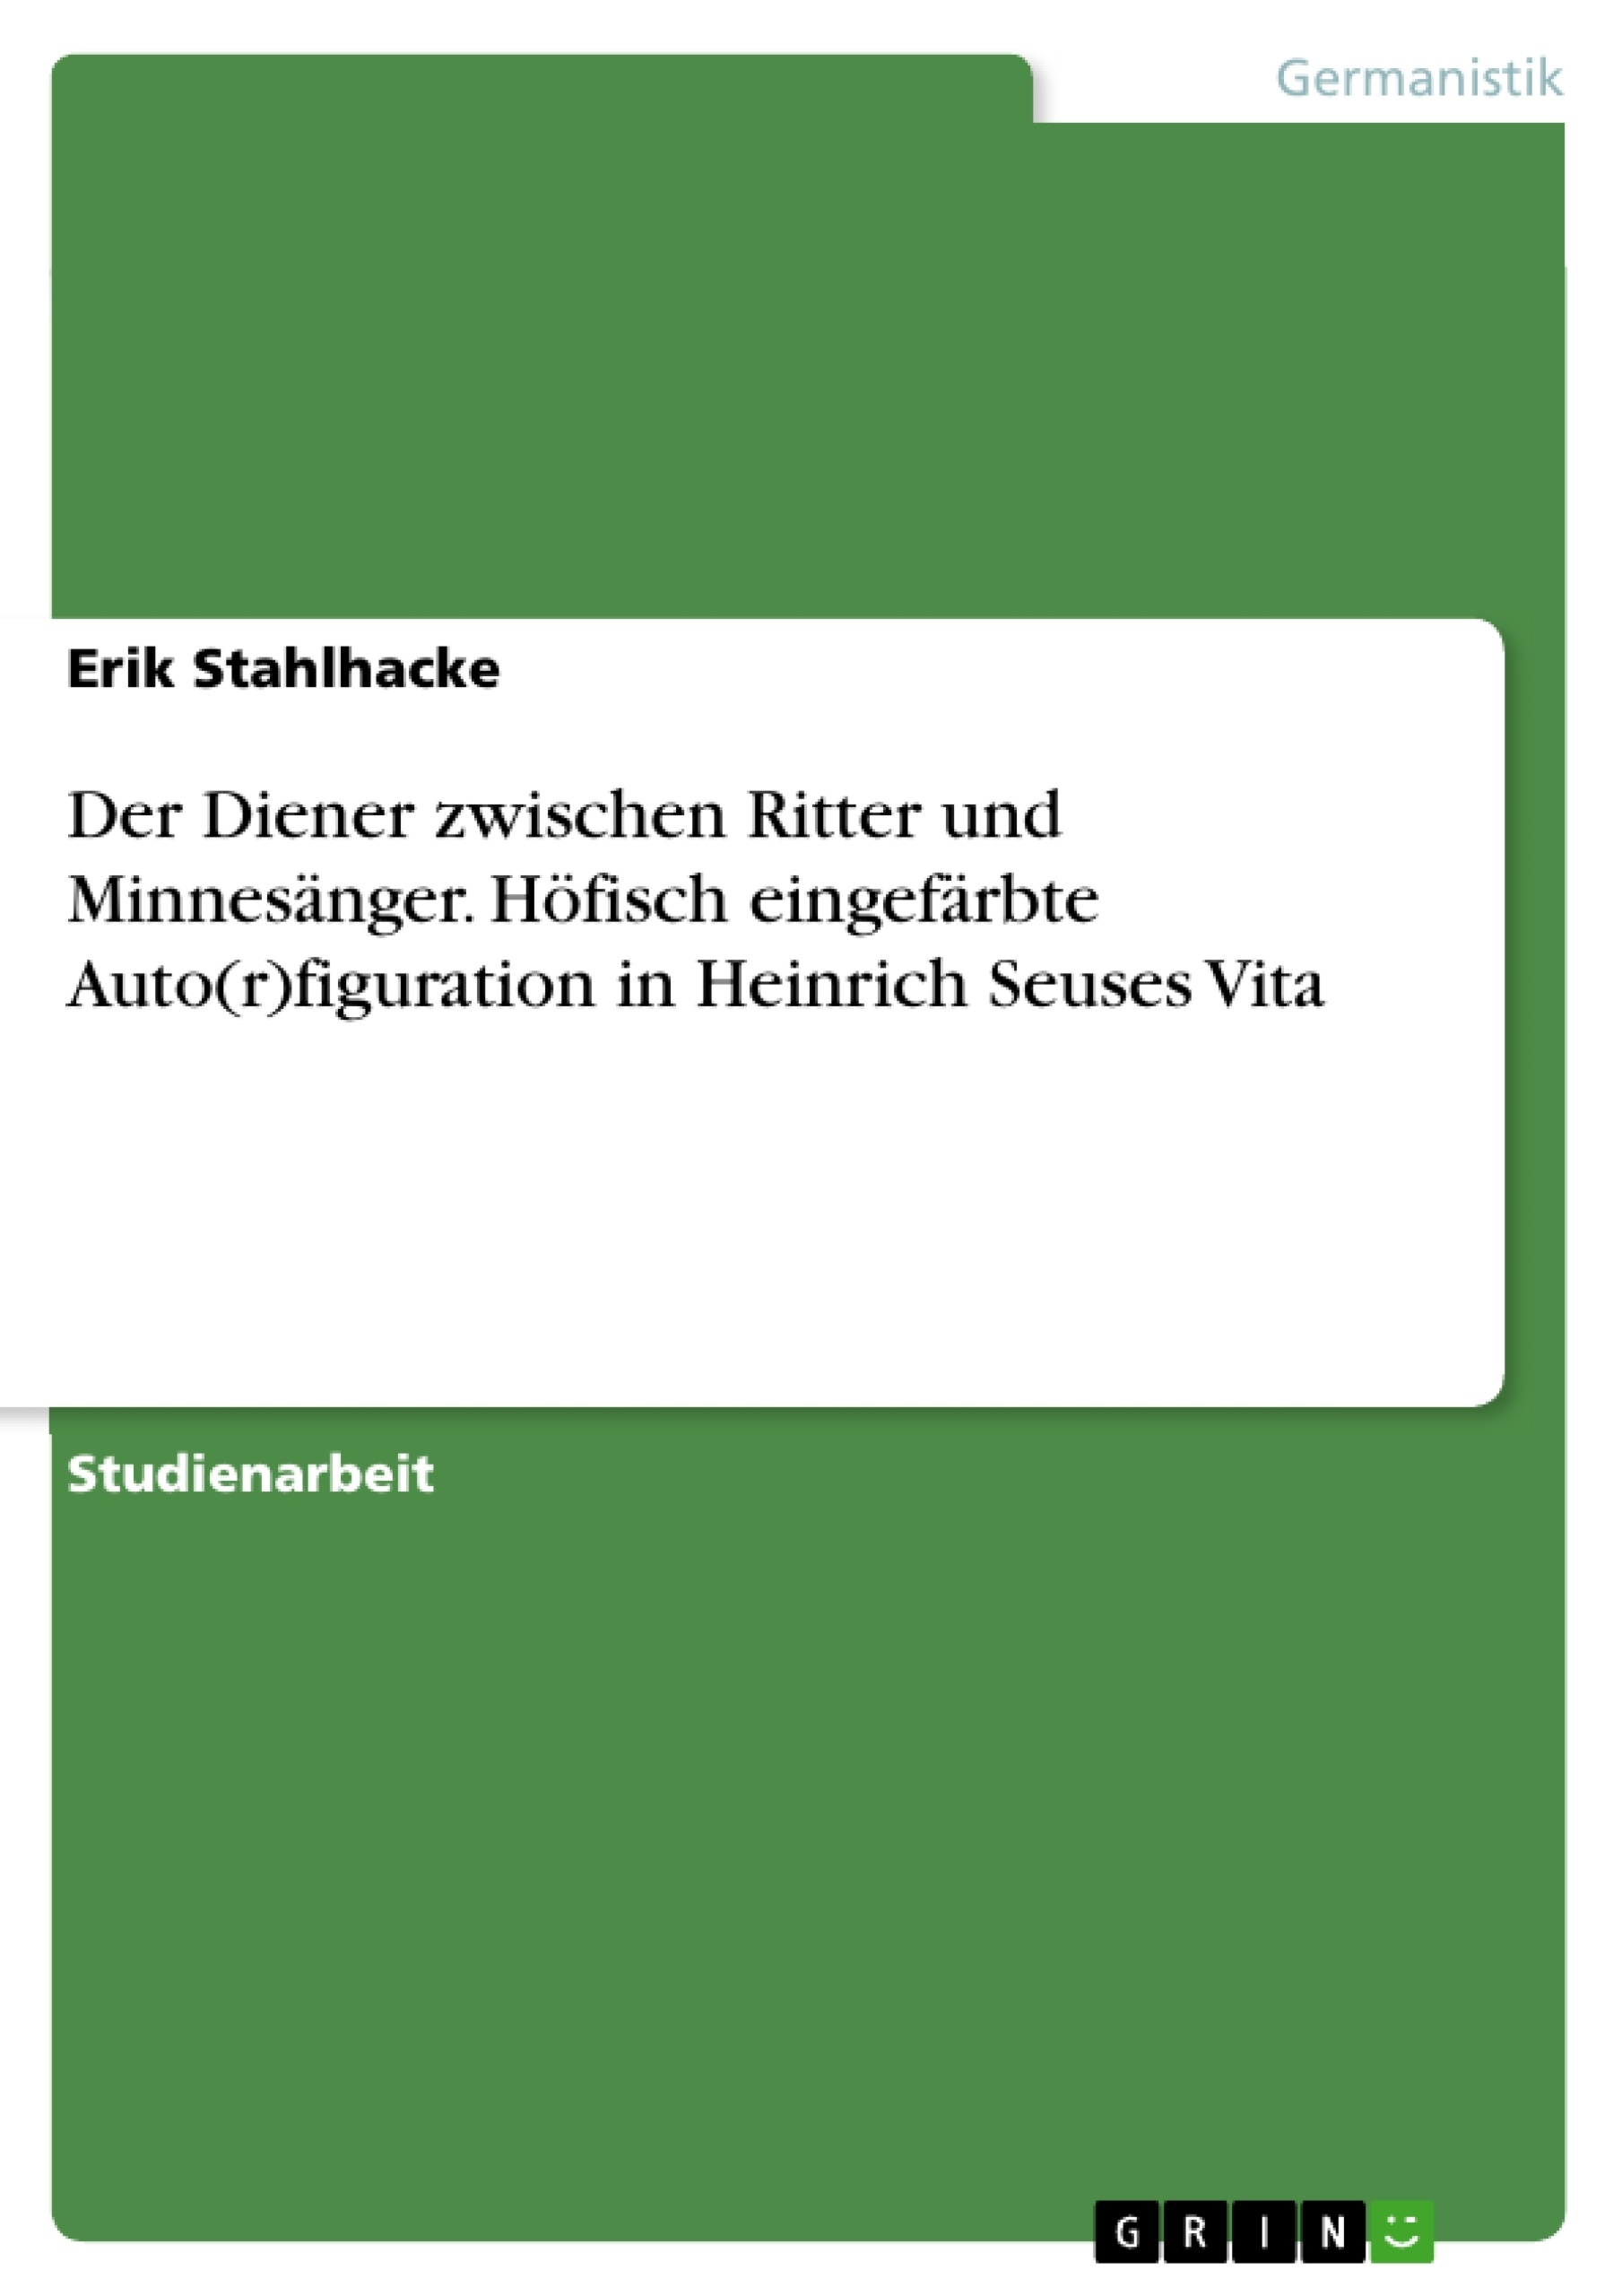 Título: Der Diener zwischen Ritter und Minnesänger. Höfisch eingefärbte Auto(r)figuration in Heinrich Seuses Vita